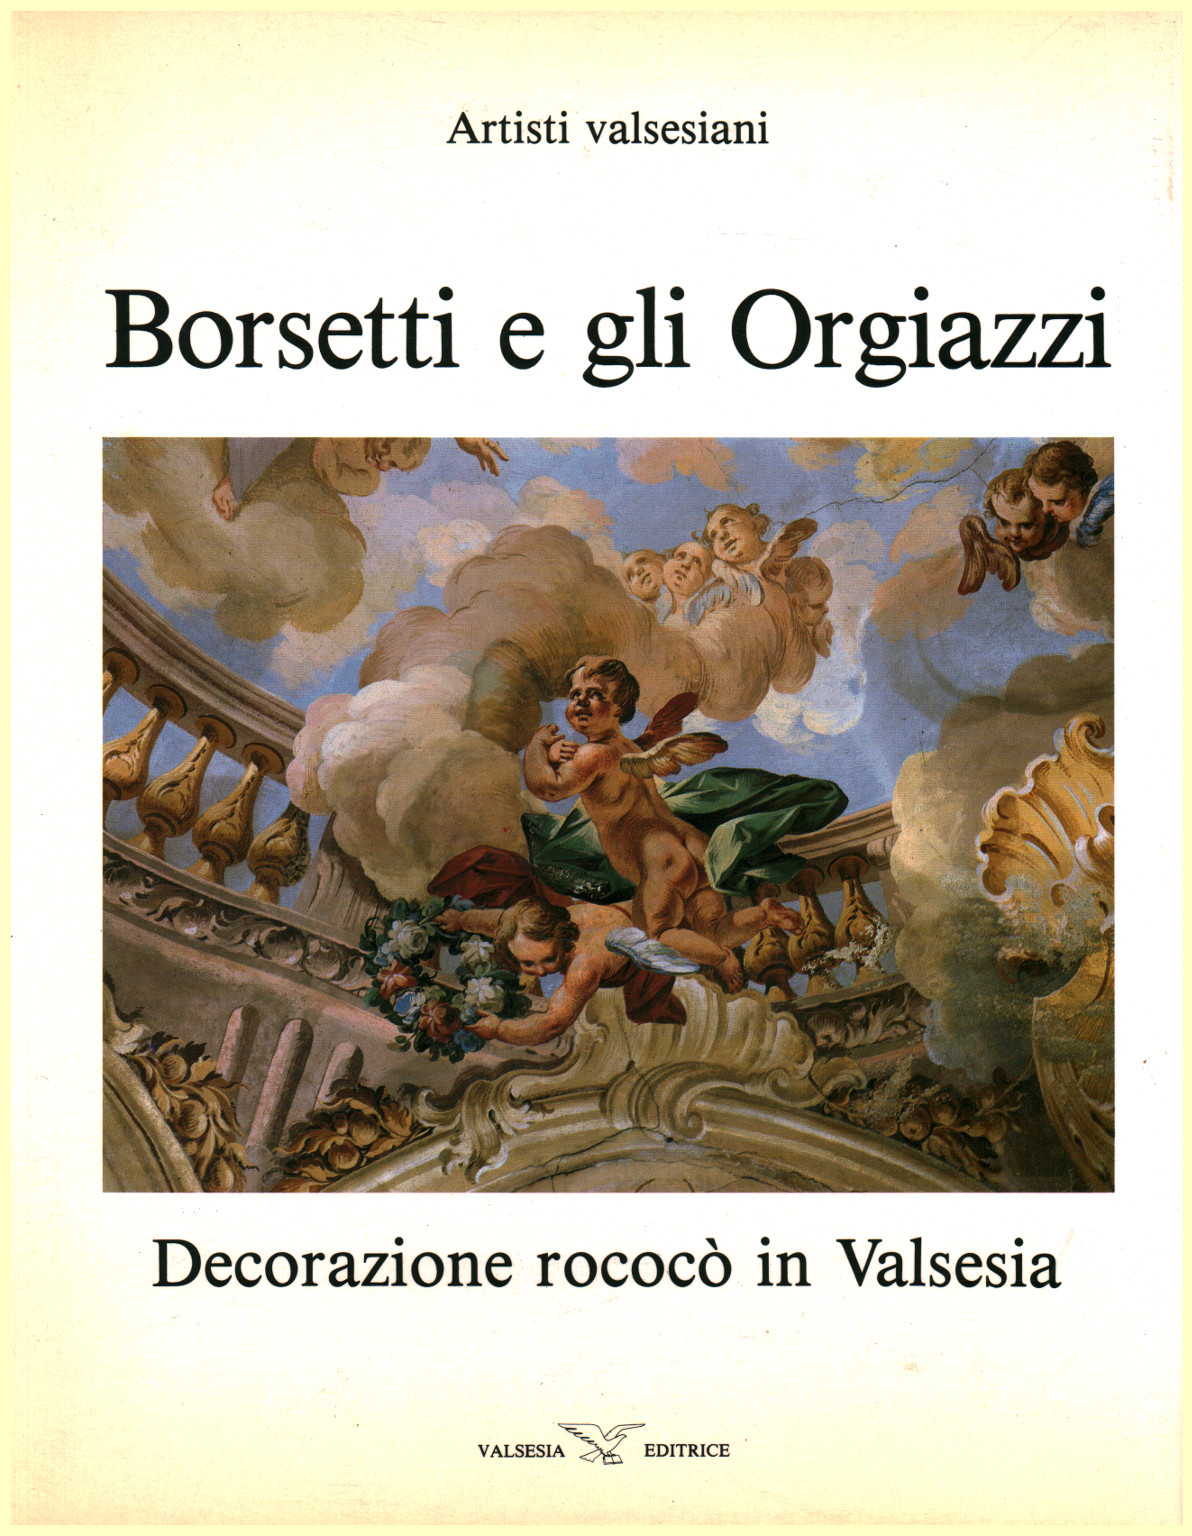 Borsetti, et Orgiazzi, s.un.